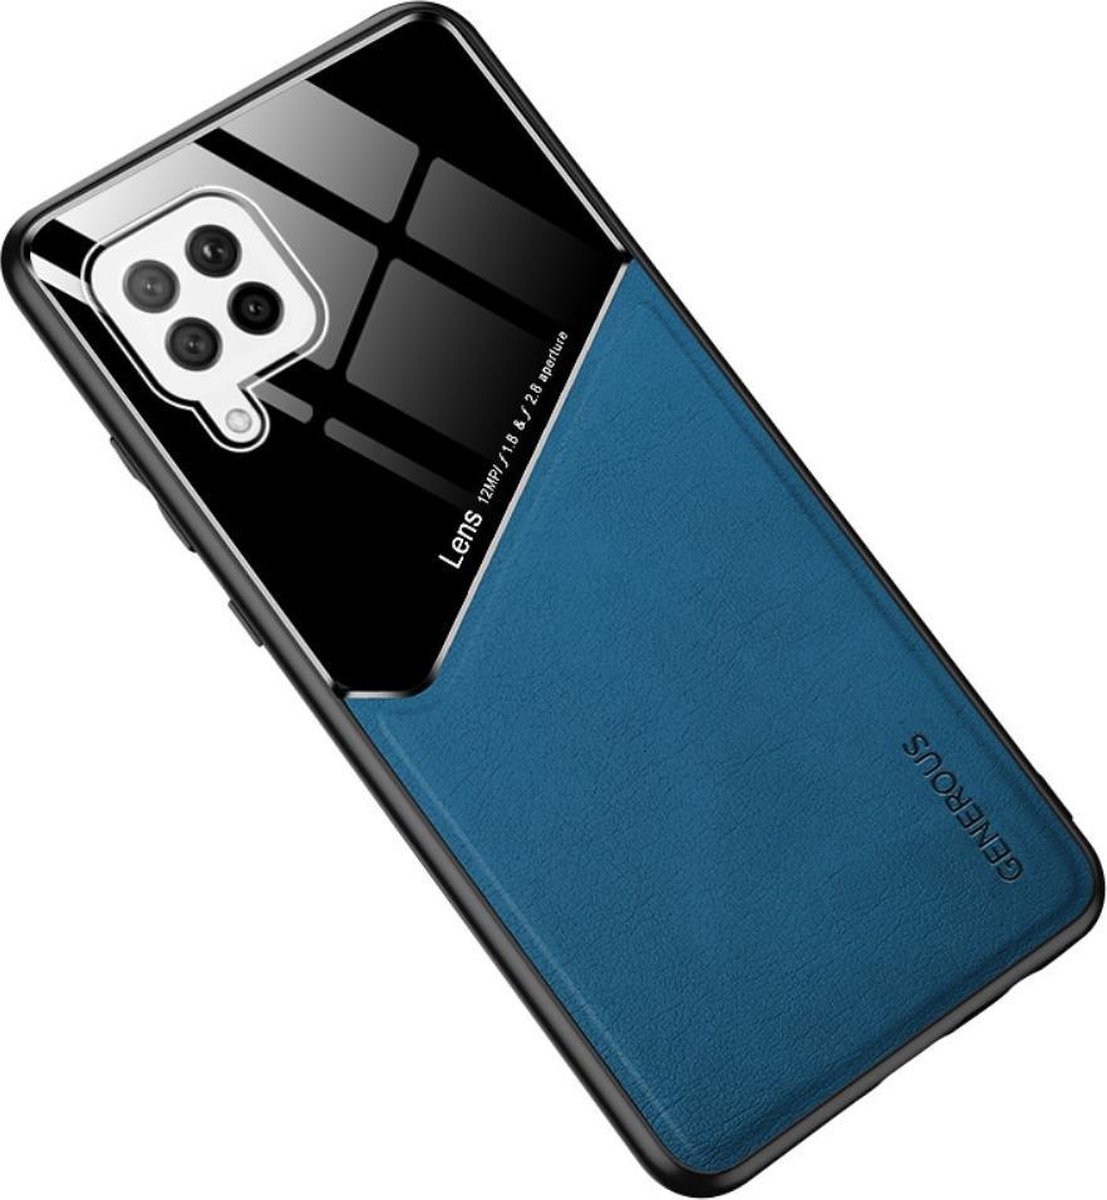 Blauwe hard cover Samsung Galaxy A42 geschikt voor magnetische autohouder